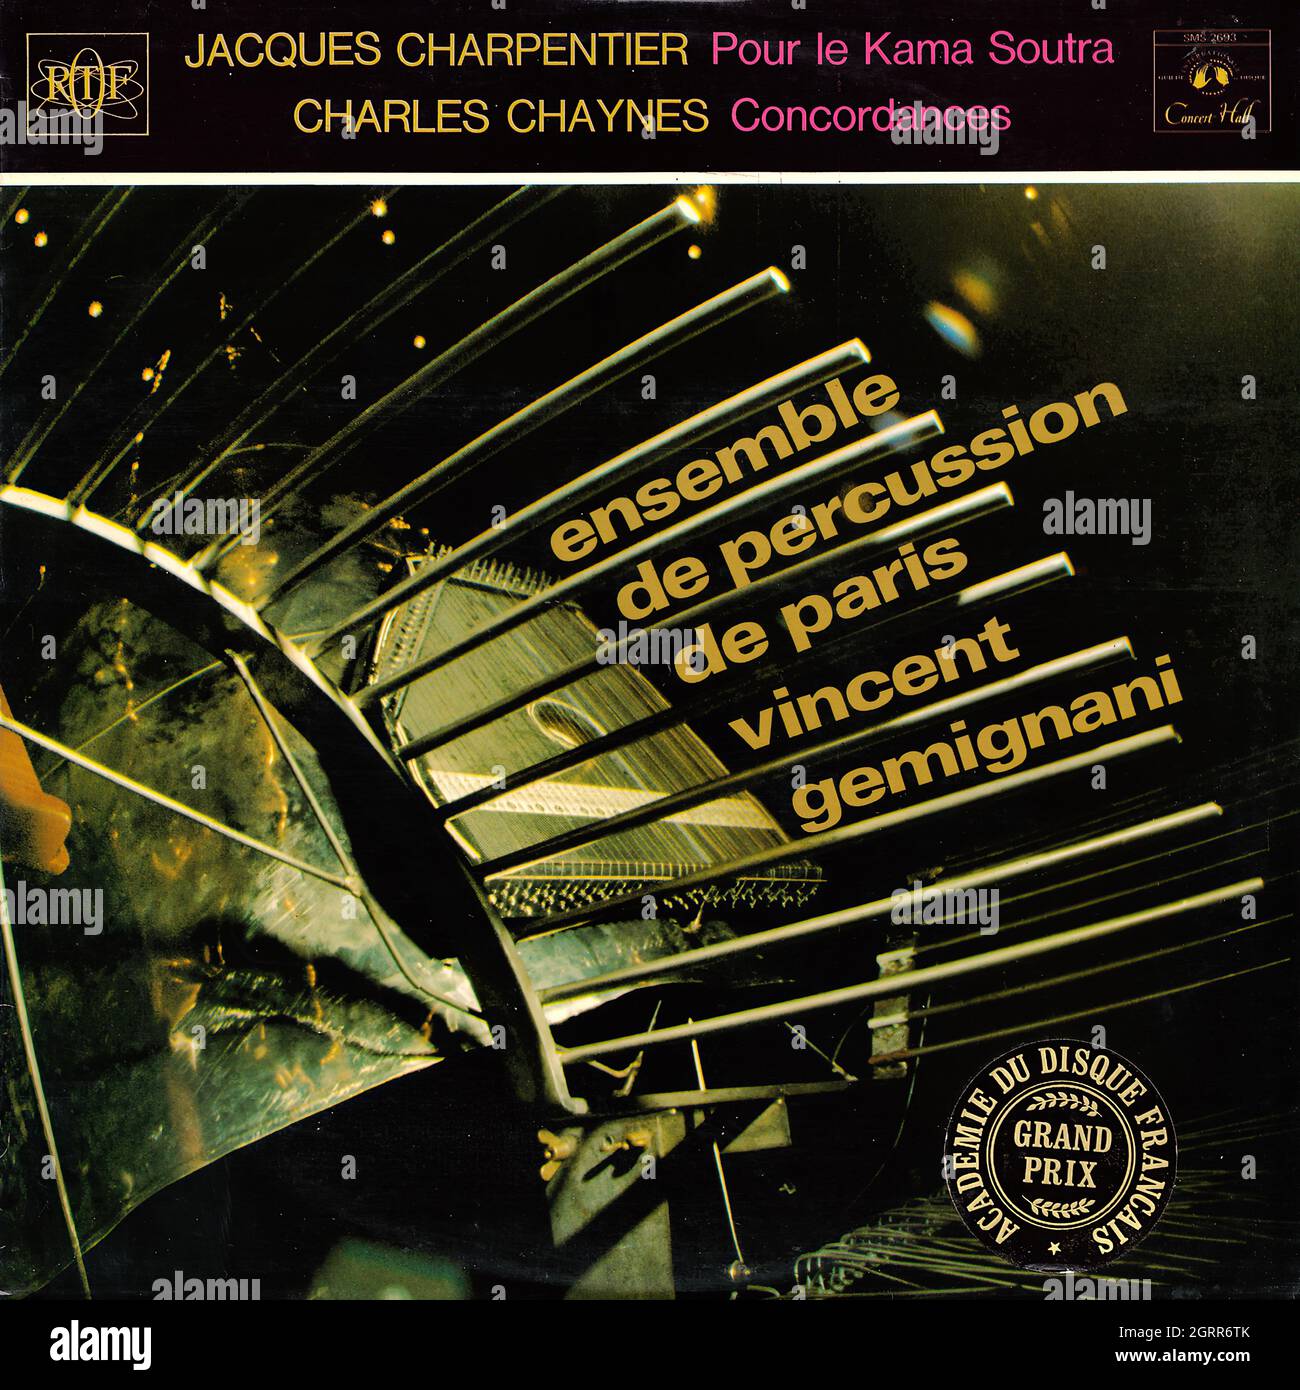 Ensemble de Percussion de Paris (Vincent Gemignani) - Pour le Kama Soutra - Concordances - Vintage Vinyl Record Cover Stock Photo